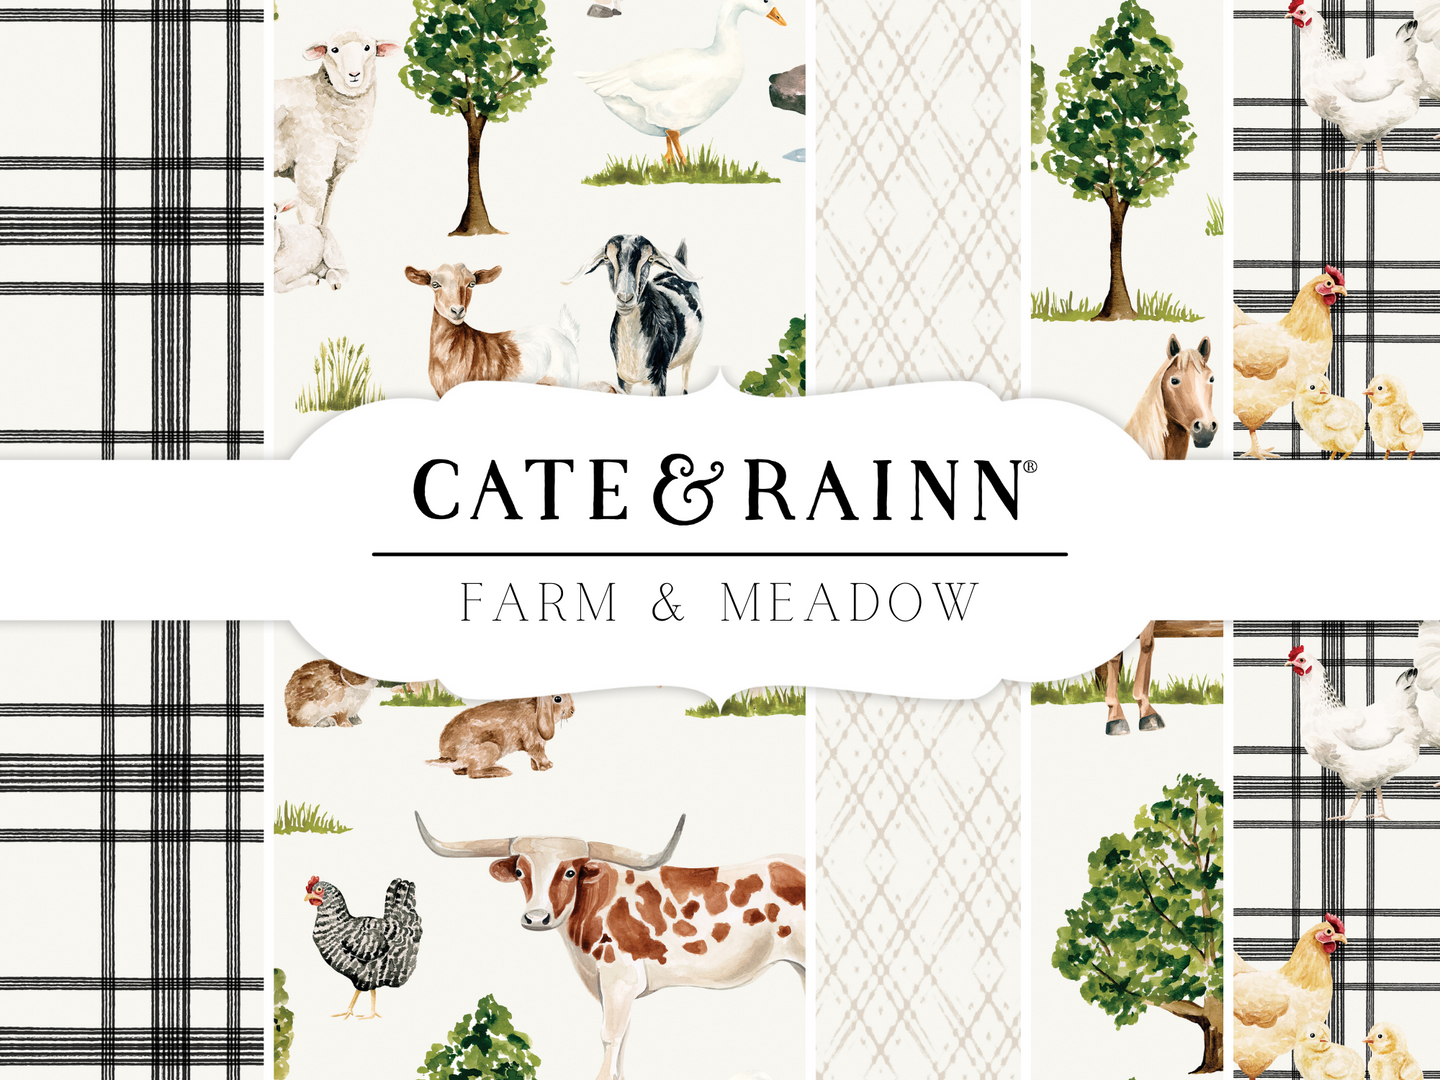 Cate & Rainn Prints - Missing from Website